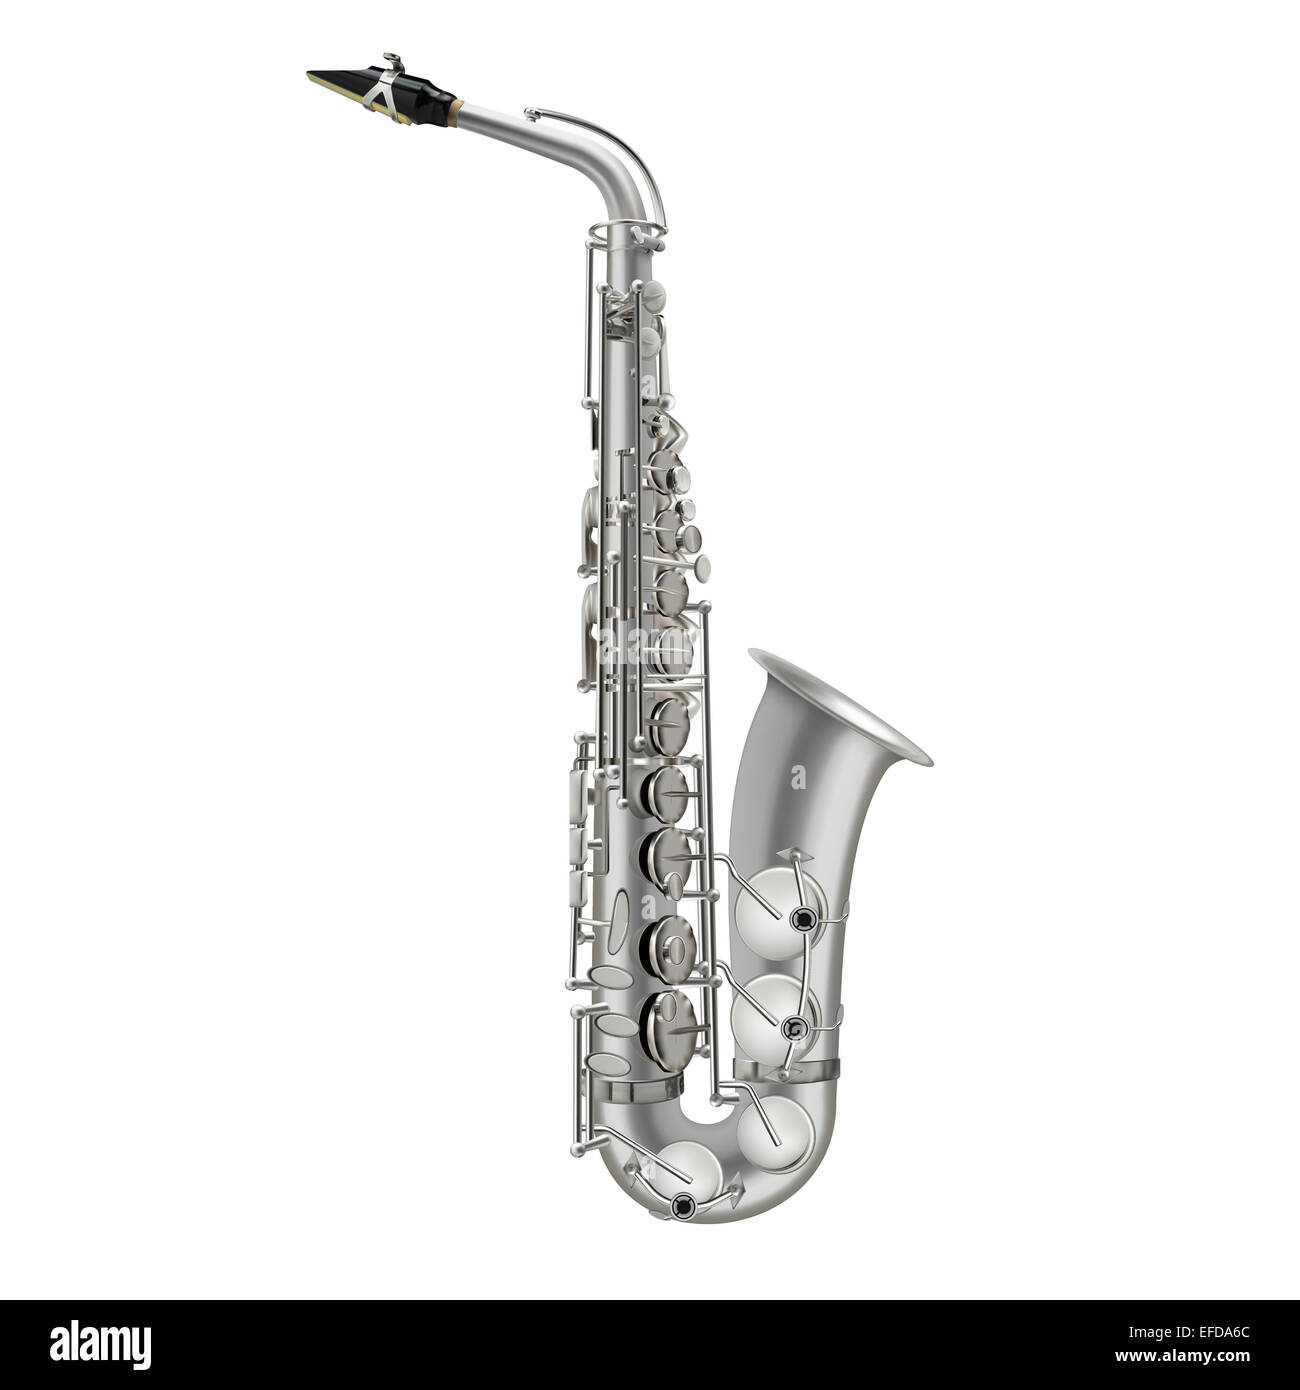 Vecteur saxophone photoréaliste illustration isolé sur fond blanc Banque D'Images